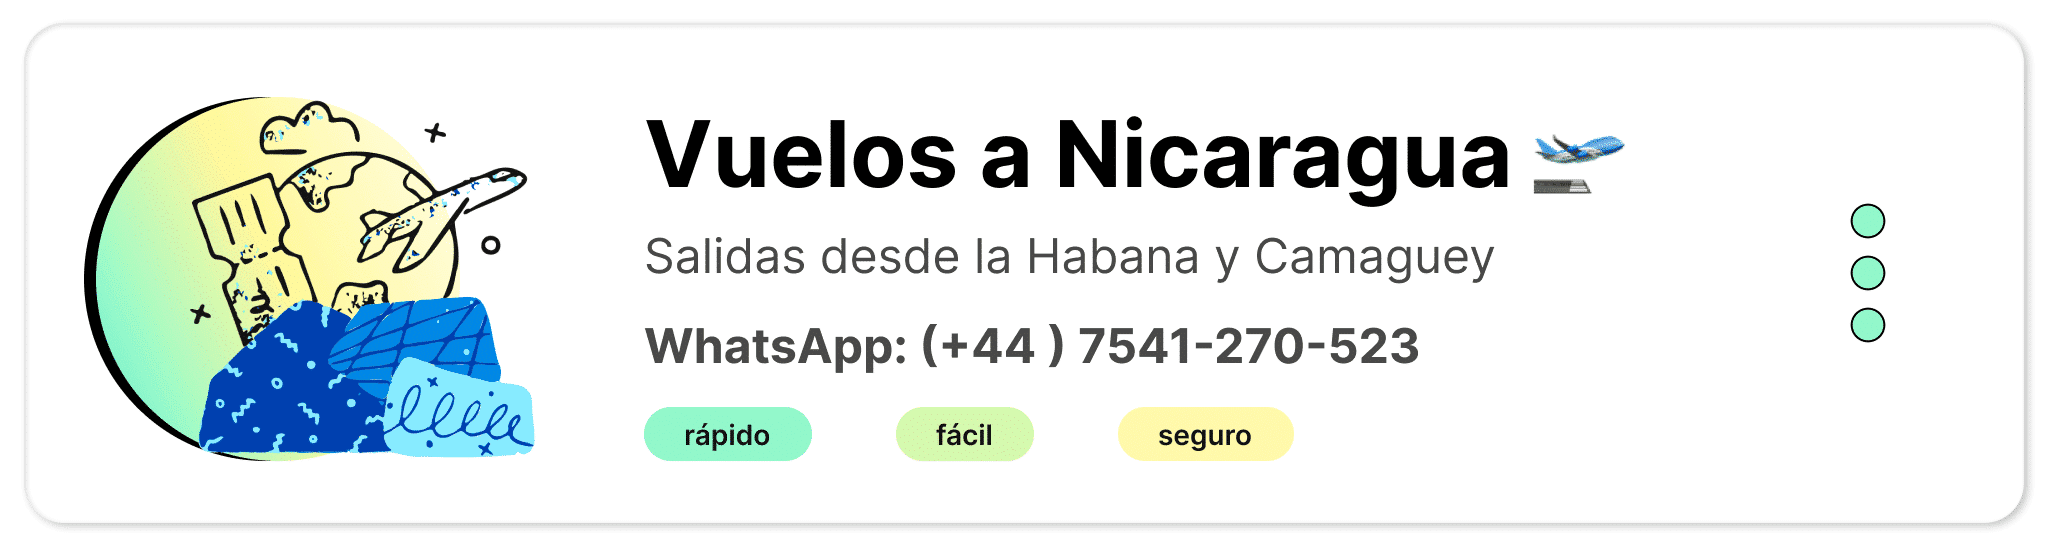 vuelos-a-nicaragua